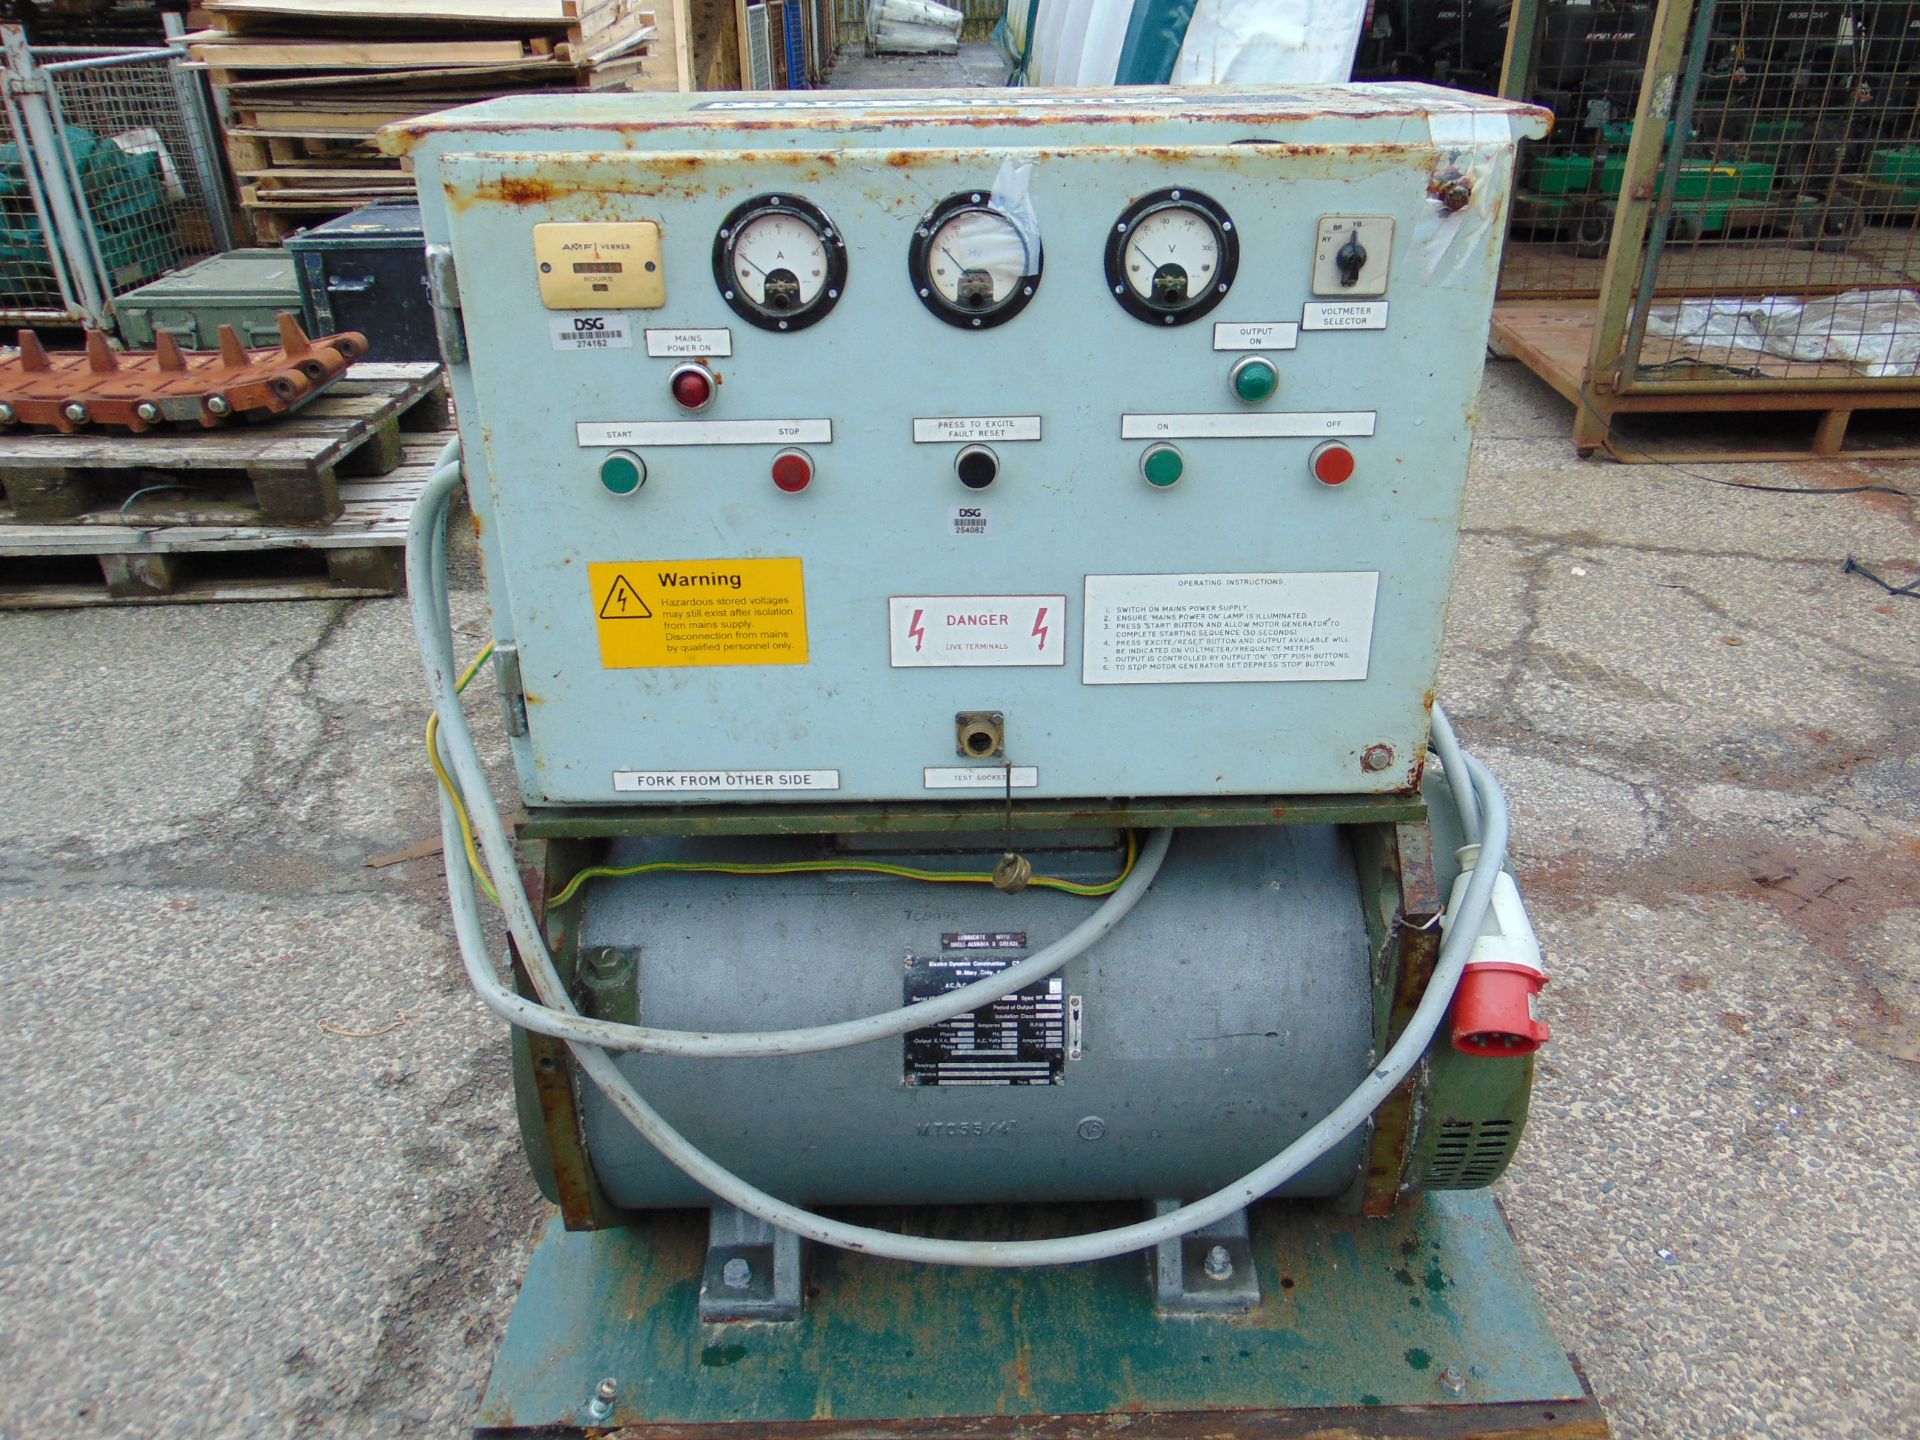 15 KVA Motor Generator 415/380 volt 50 Hz